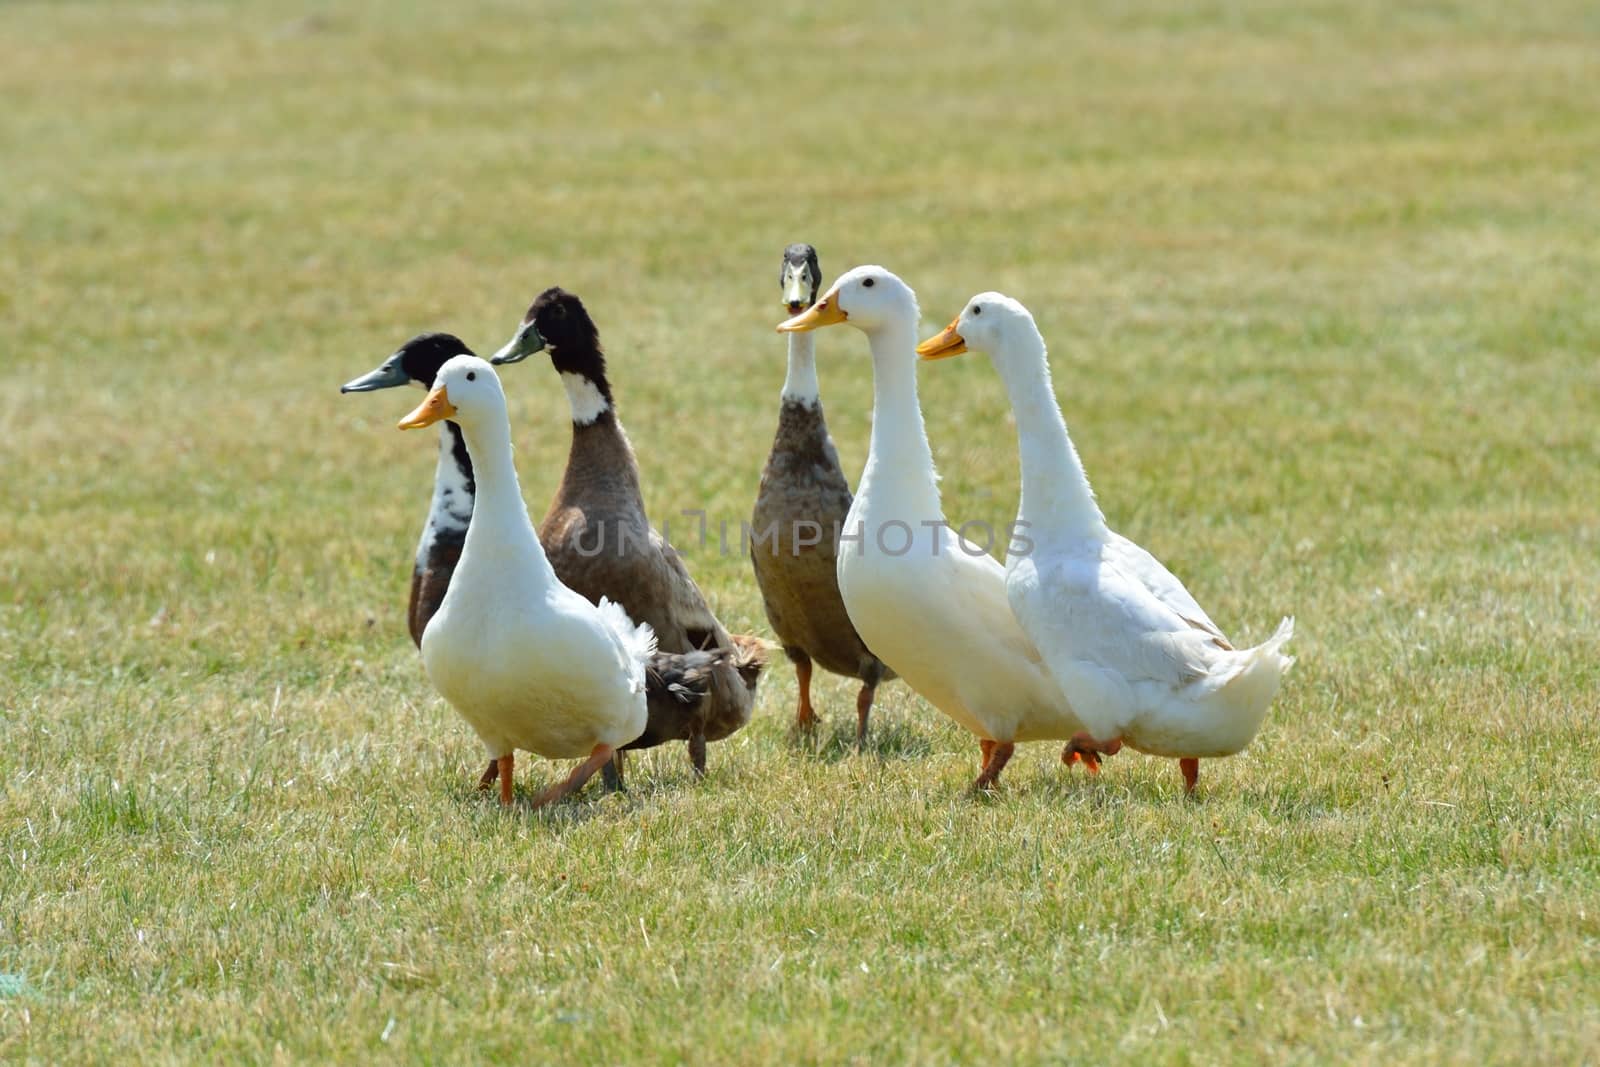 ducks running by pauws99